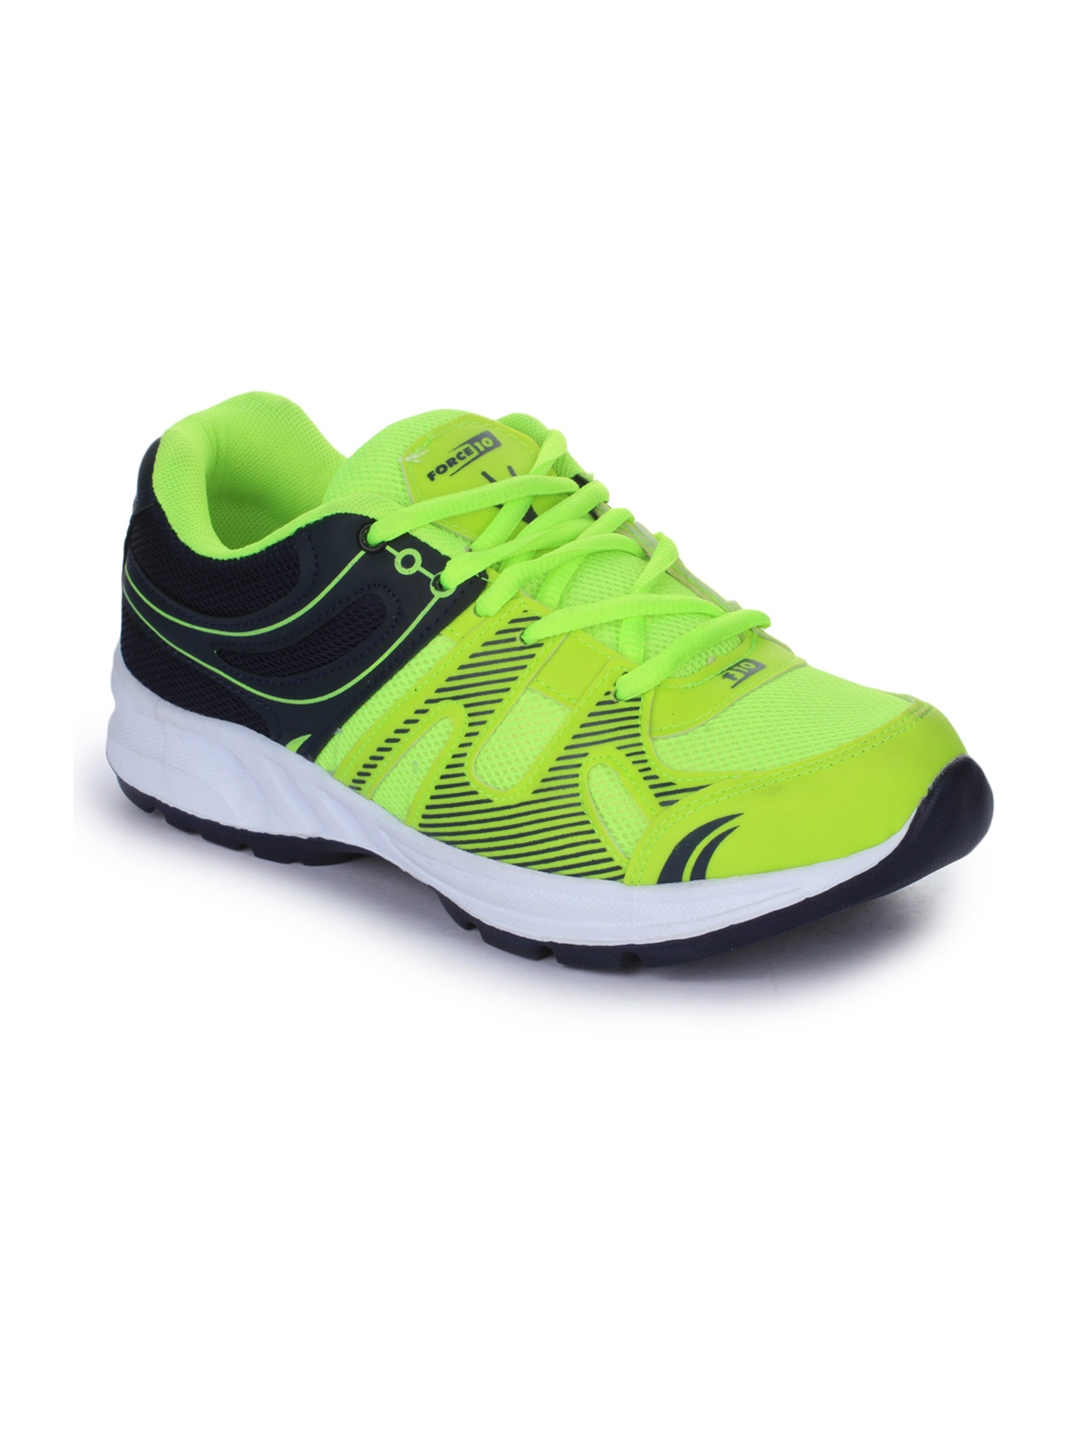 fluorescent green running shoes